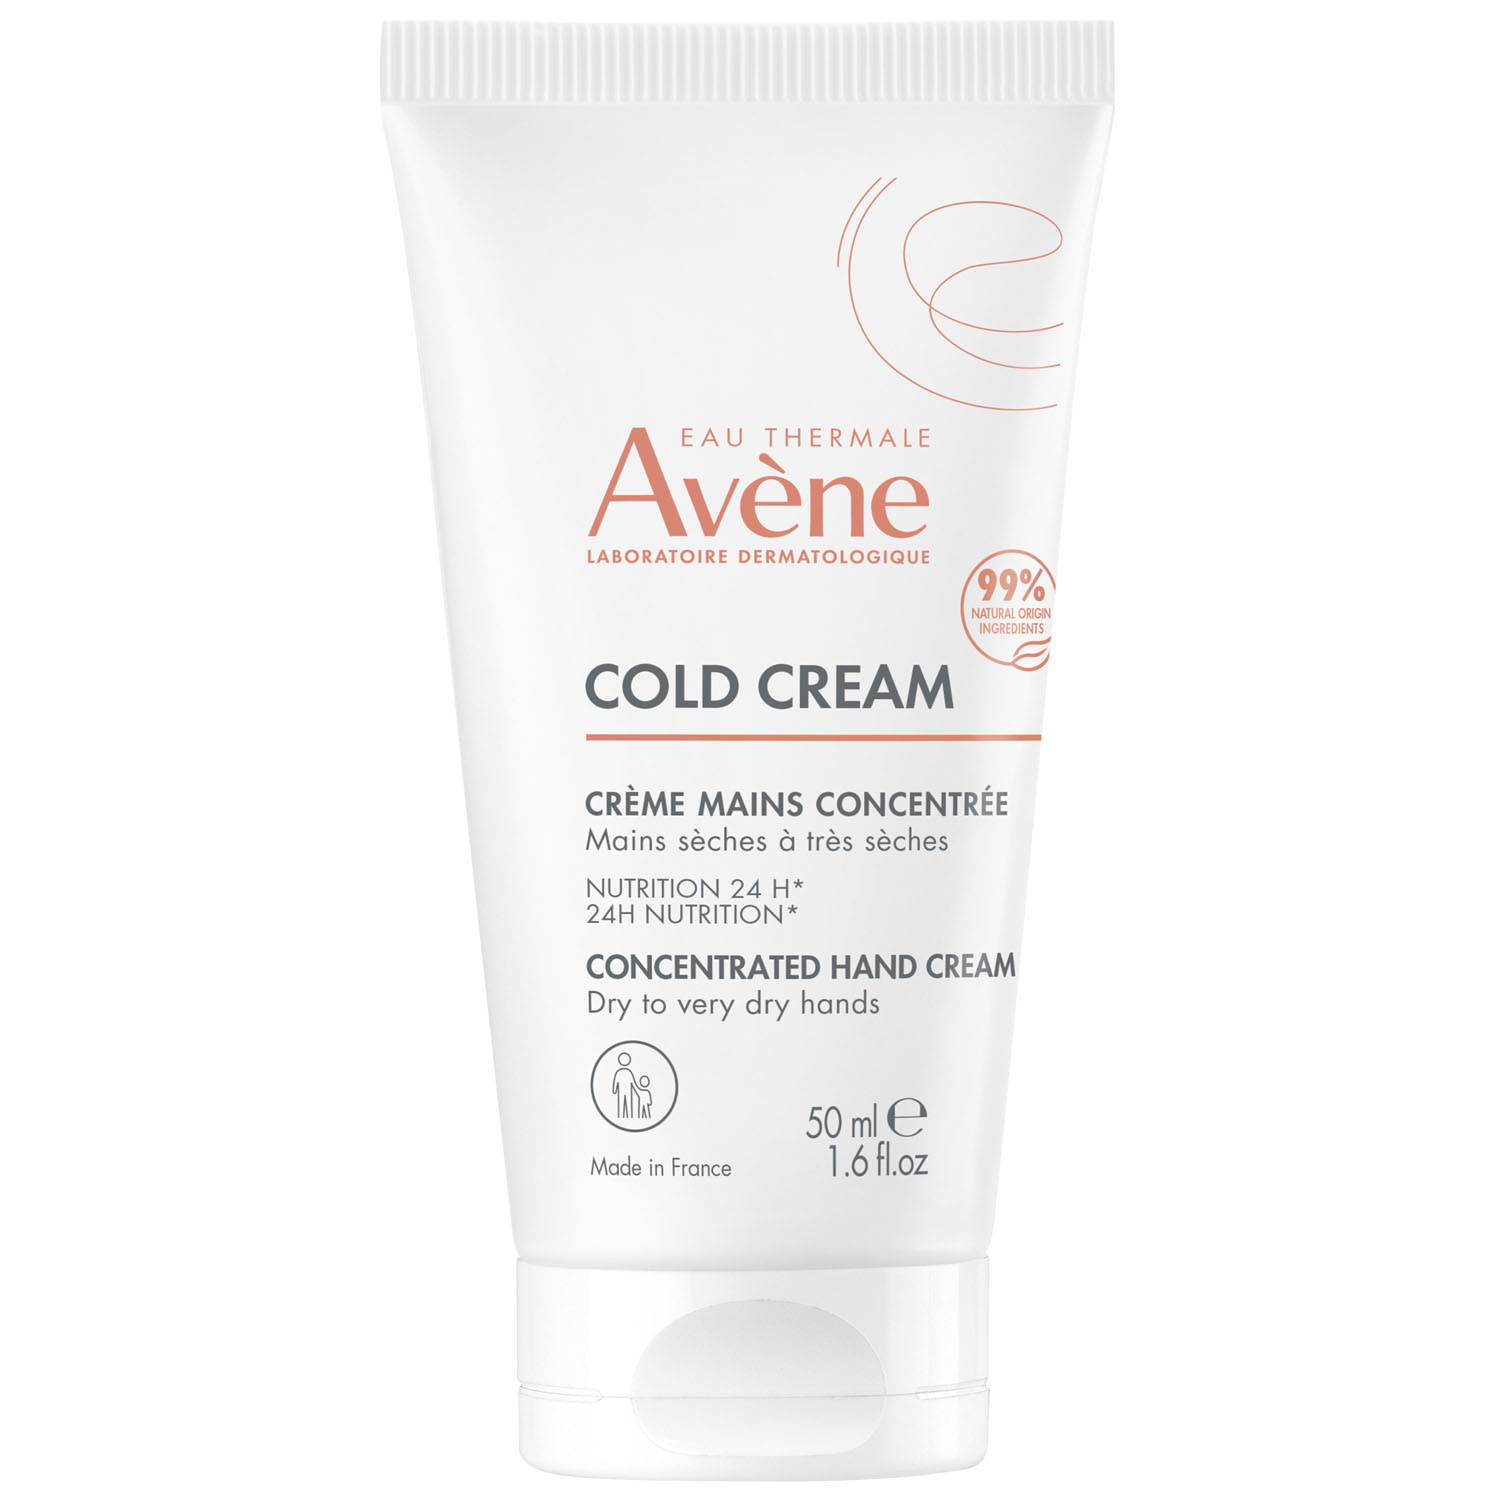 Avene Насыщенный крем для рук с колд-кремом для сухой и очень сухой кожи 2+, 50 мл (Avene, Cold Cream) крем для рук с колд кремом cold cream